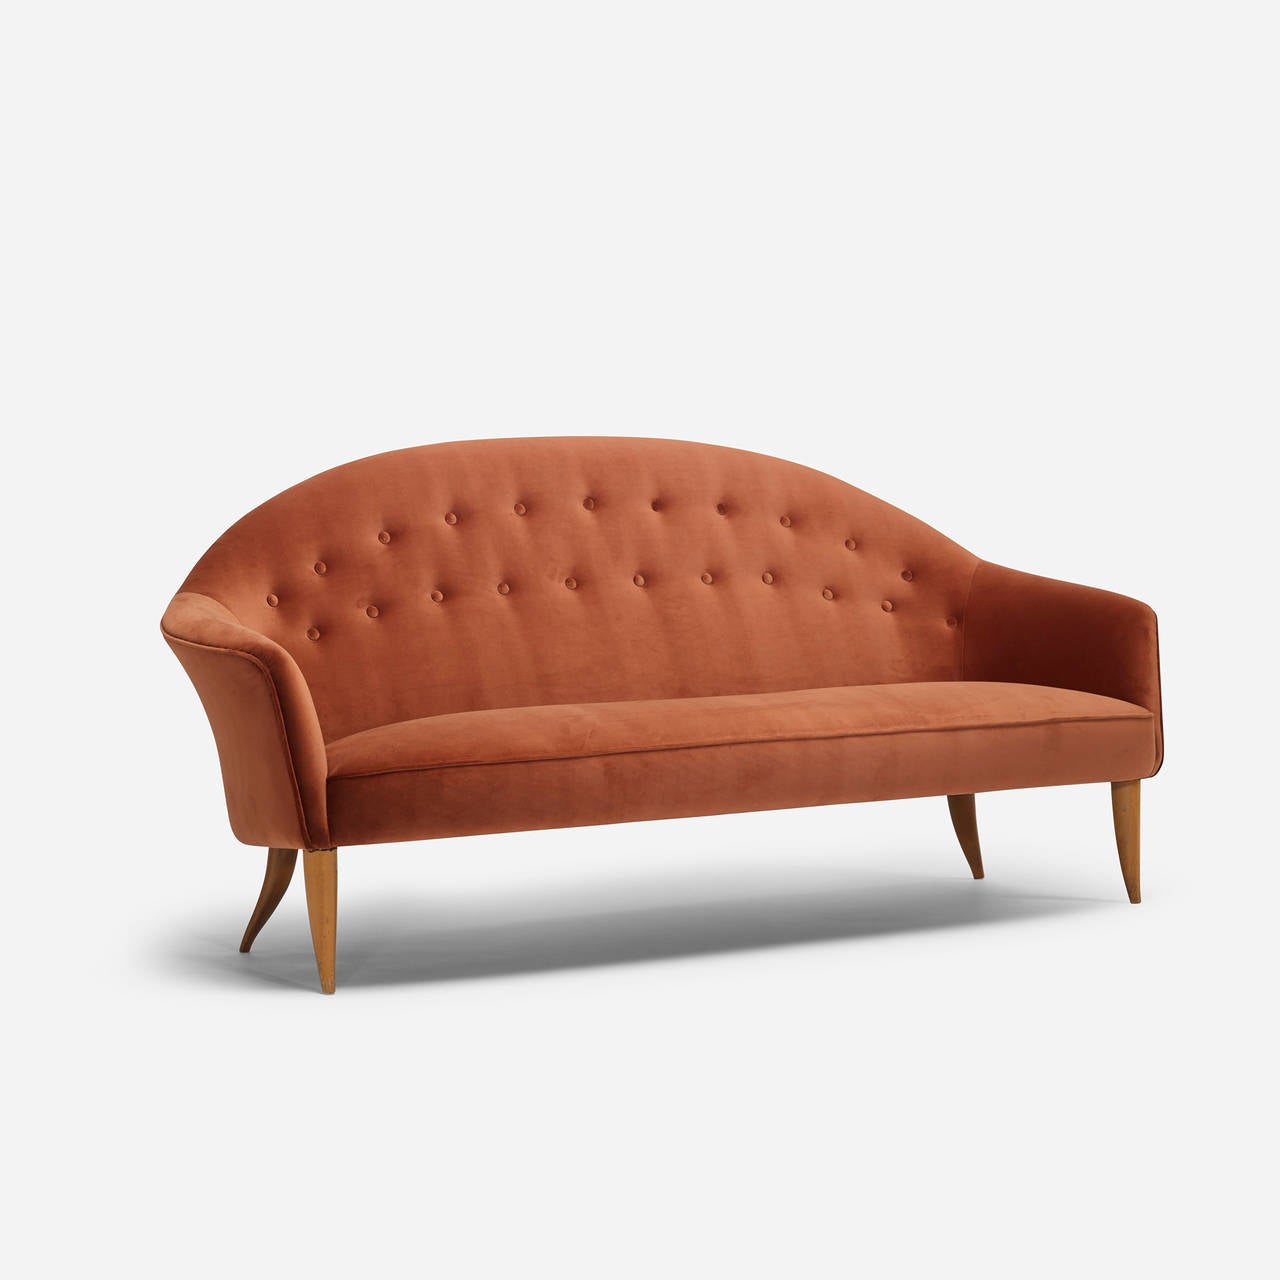 Paradise sofa by Kerstin Horlin-Holmquist for Nordiska Kompaniets Verkstader